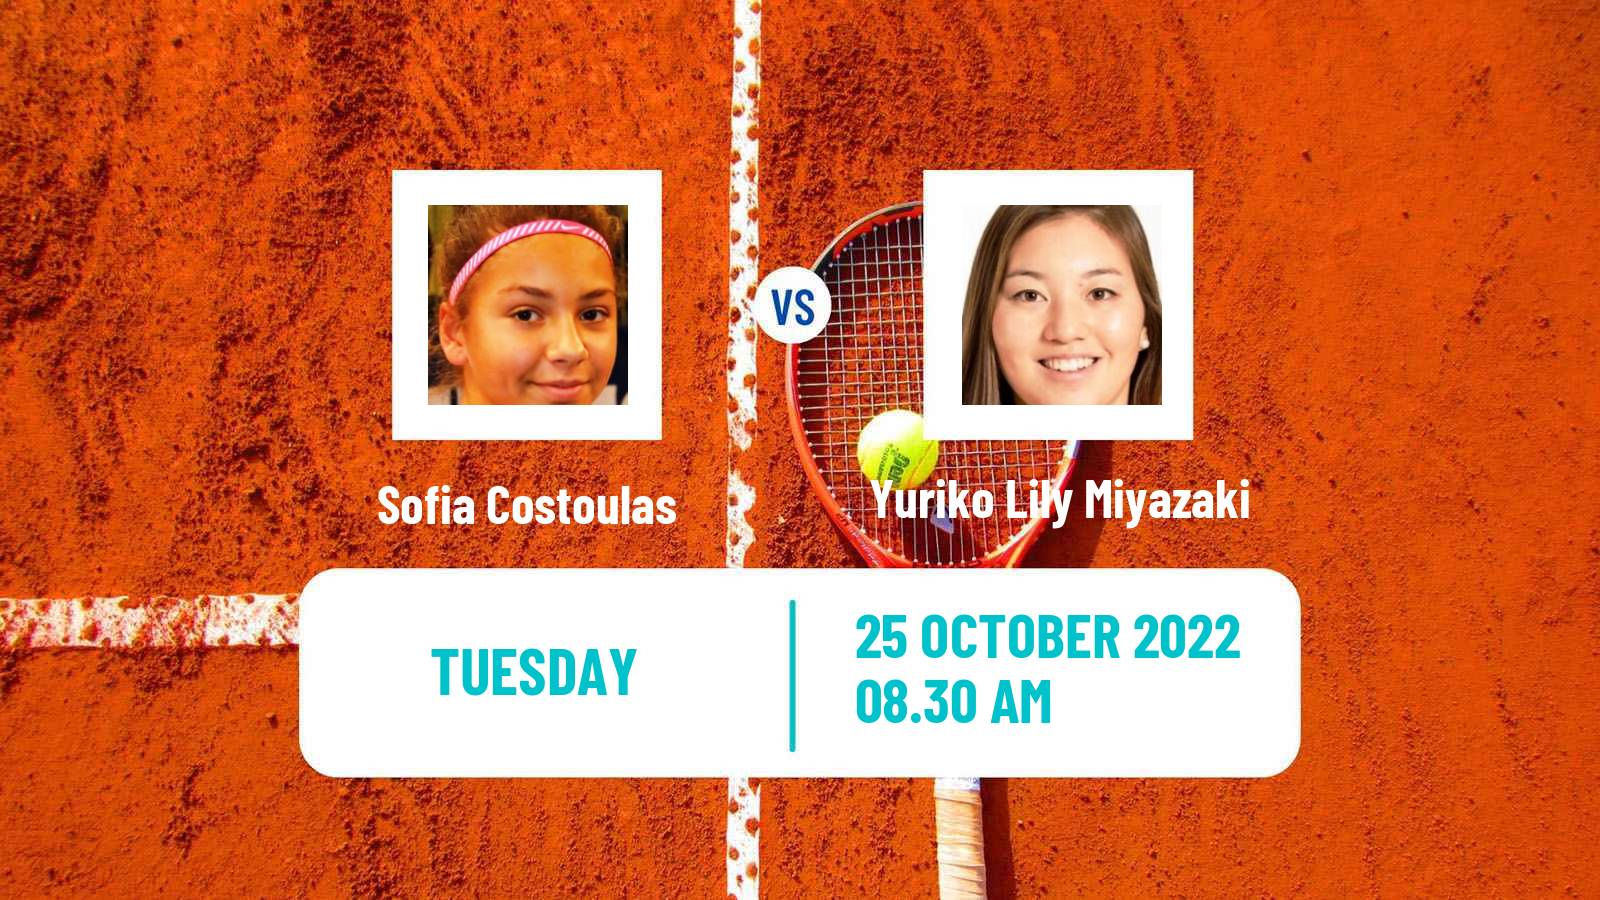 Tennis ITF Tournaments Sofia Costoulas - Yuriko Lily Miyazaki